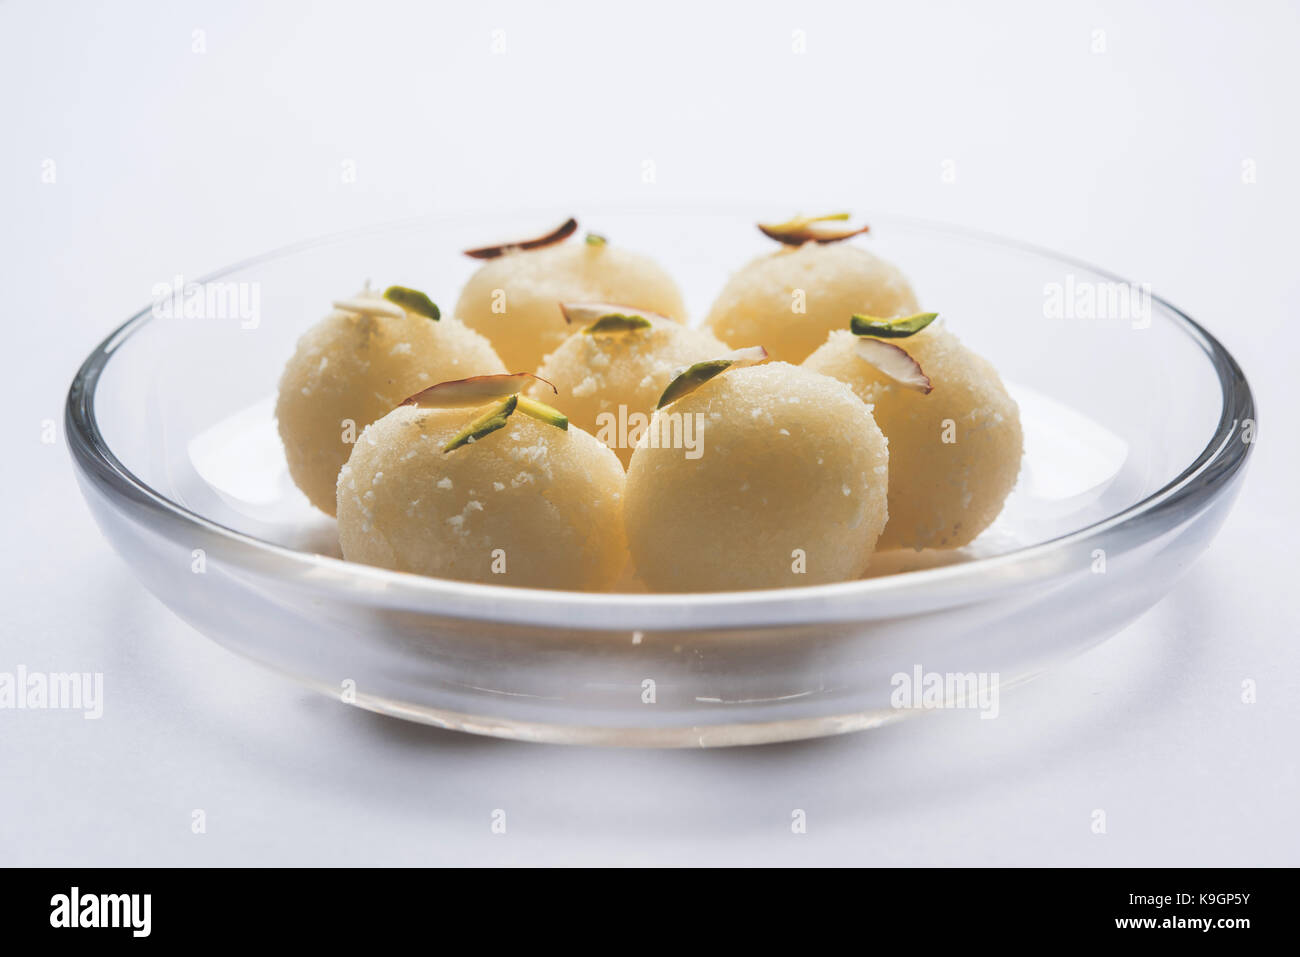 Stock Foto von Rasgulla oder Schwamm Ras Gulla, ist es von der Form eines Balls, mit Knödel von Chhena und Grieß Teig, in Sirup gekocht von Zucker. Stockfoto